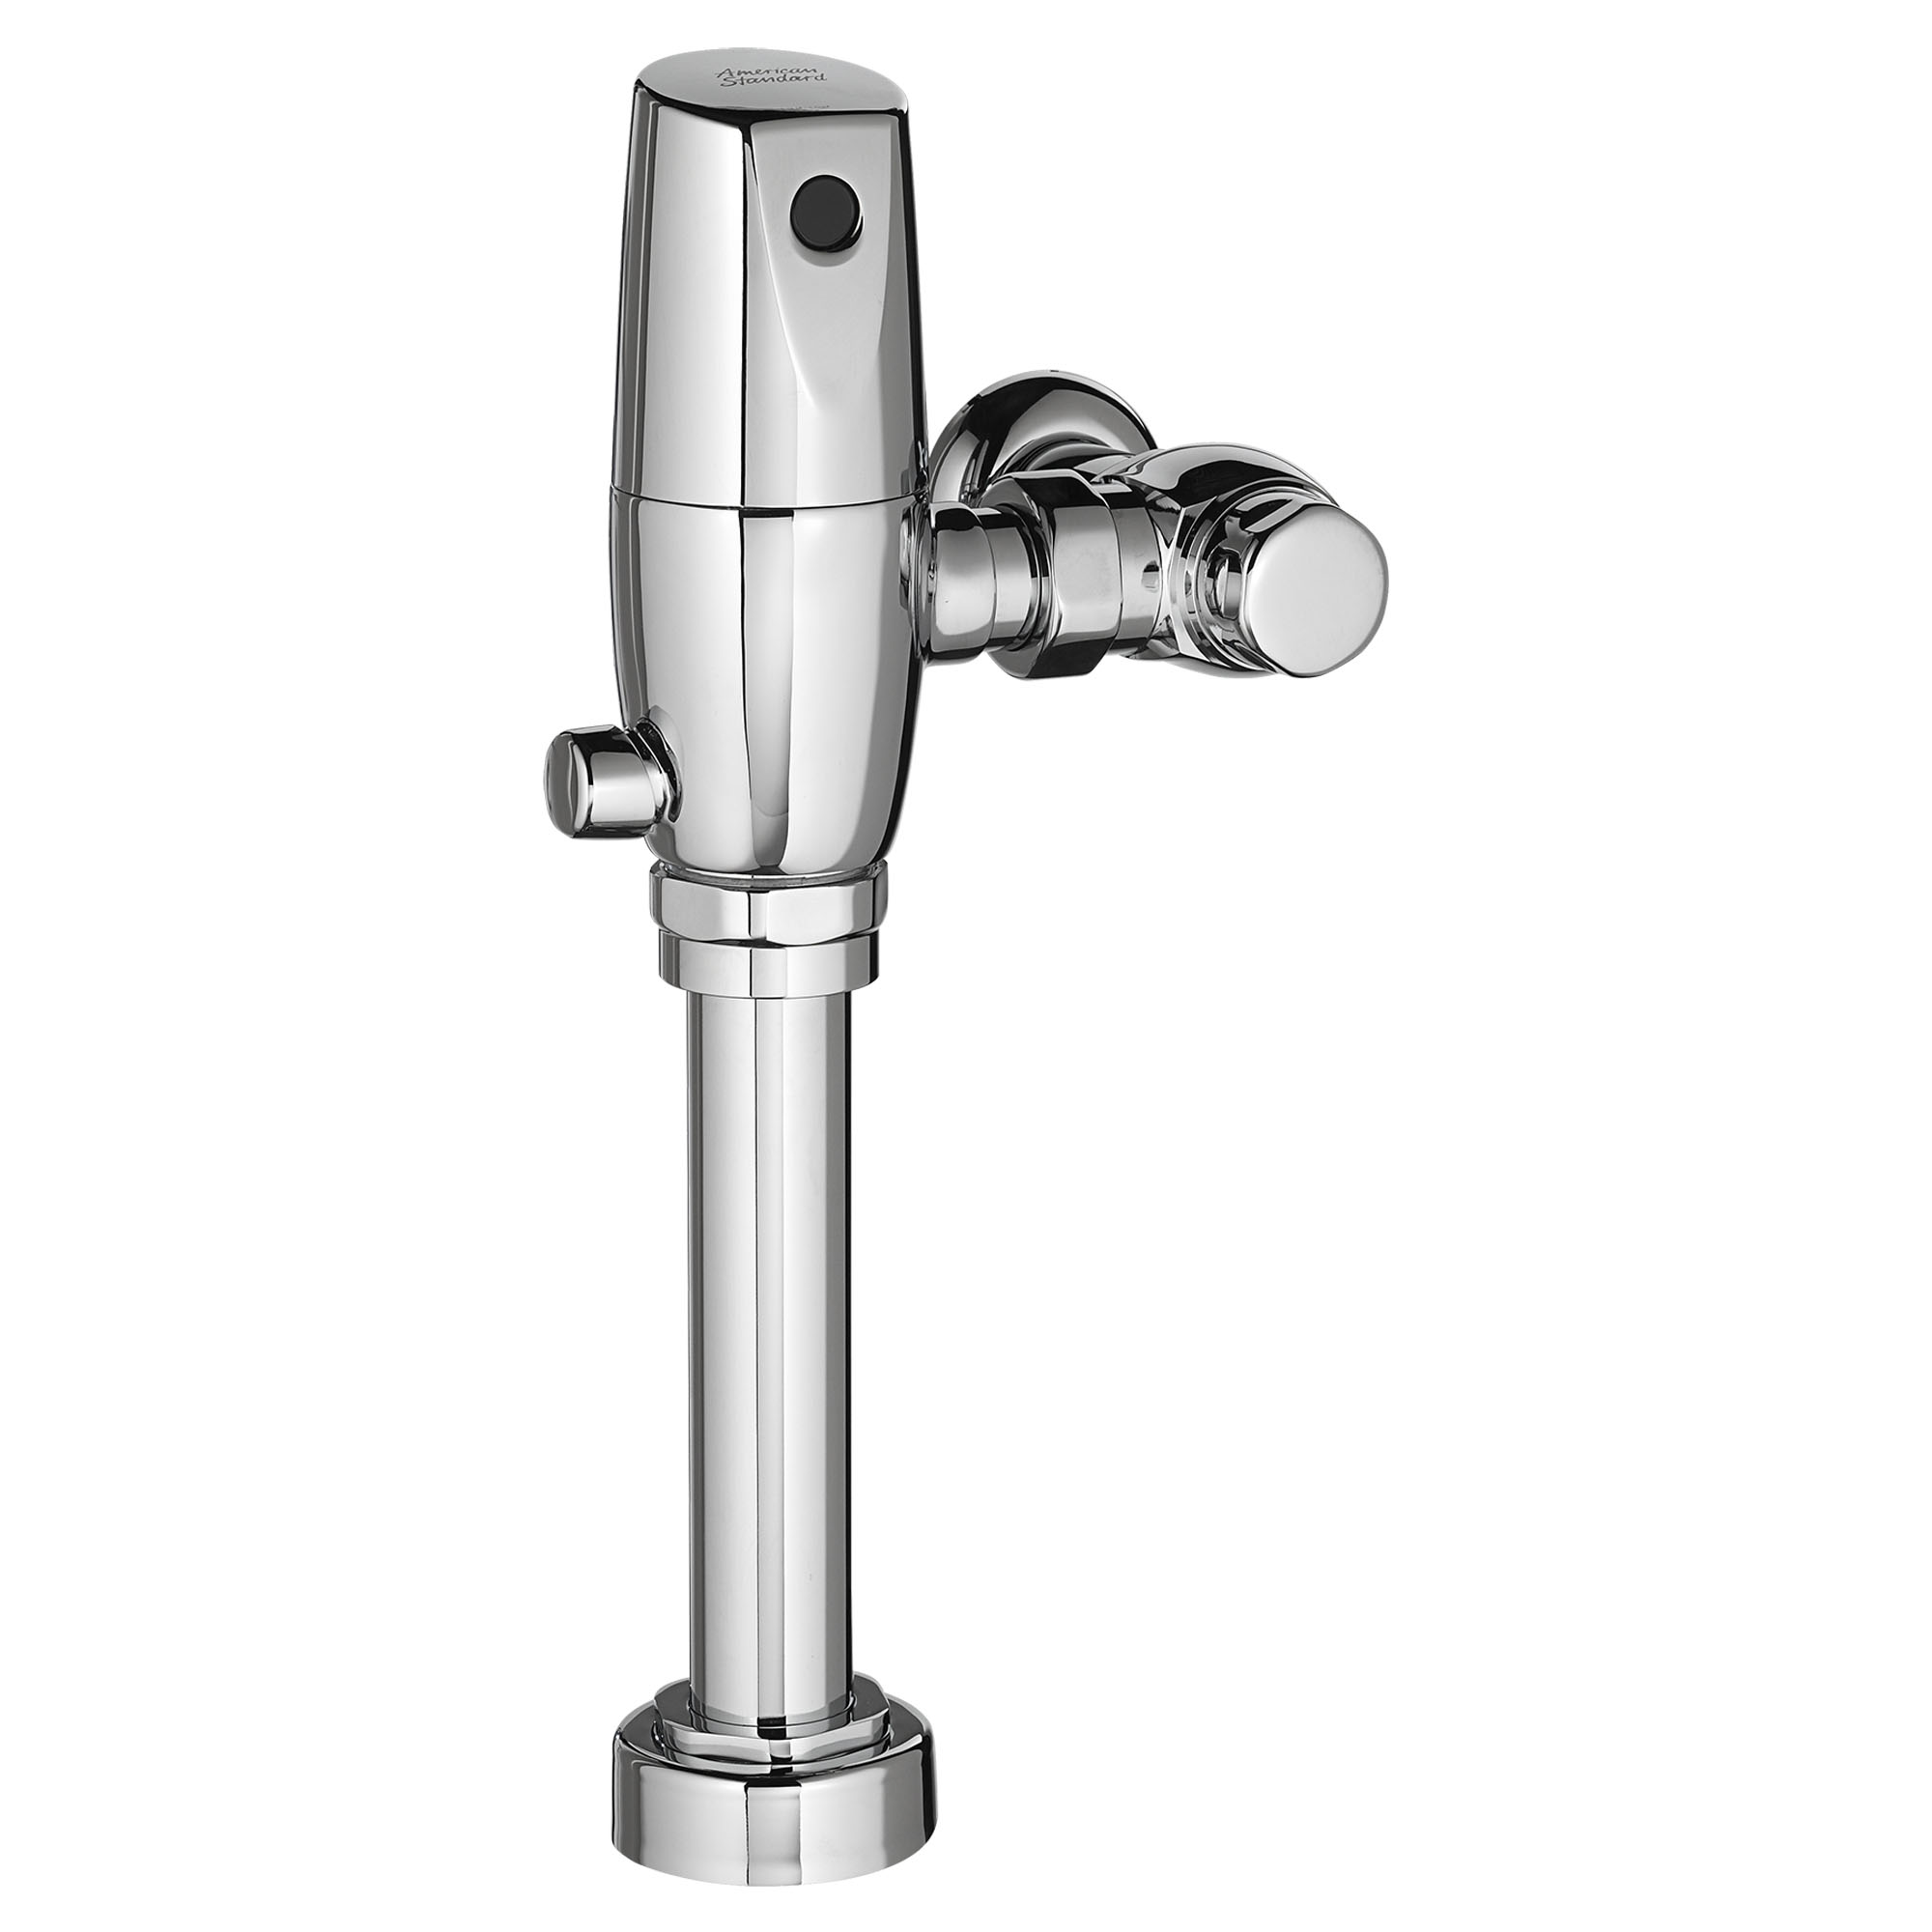 UltimaMC SelectronicMC - Robinets de chasse d’eau double exposés à piston pour toilette, alimentation à pile, 1,28/1,1 gpc (4,8/4,2 lpc)